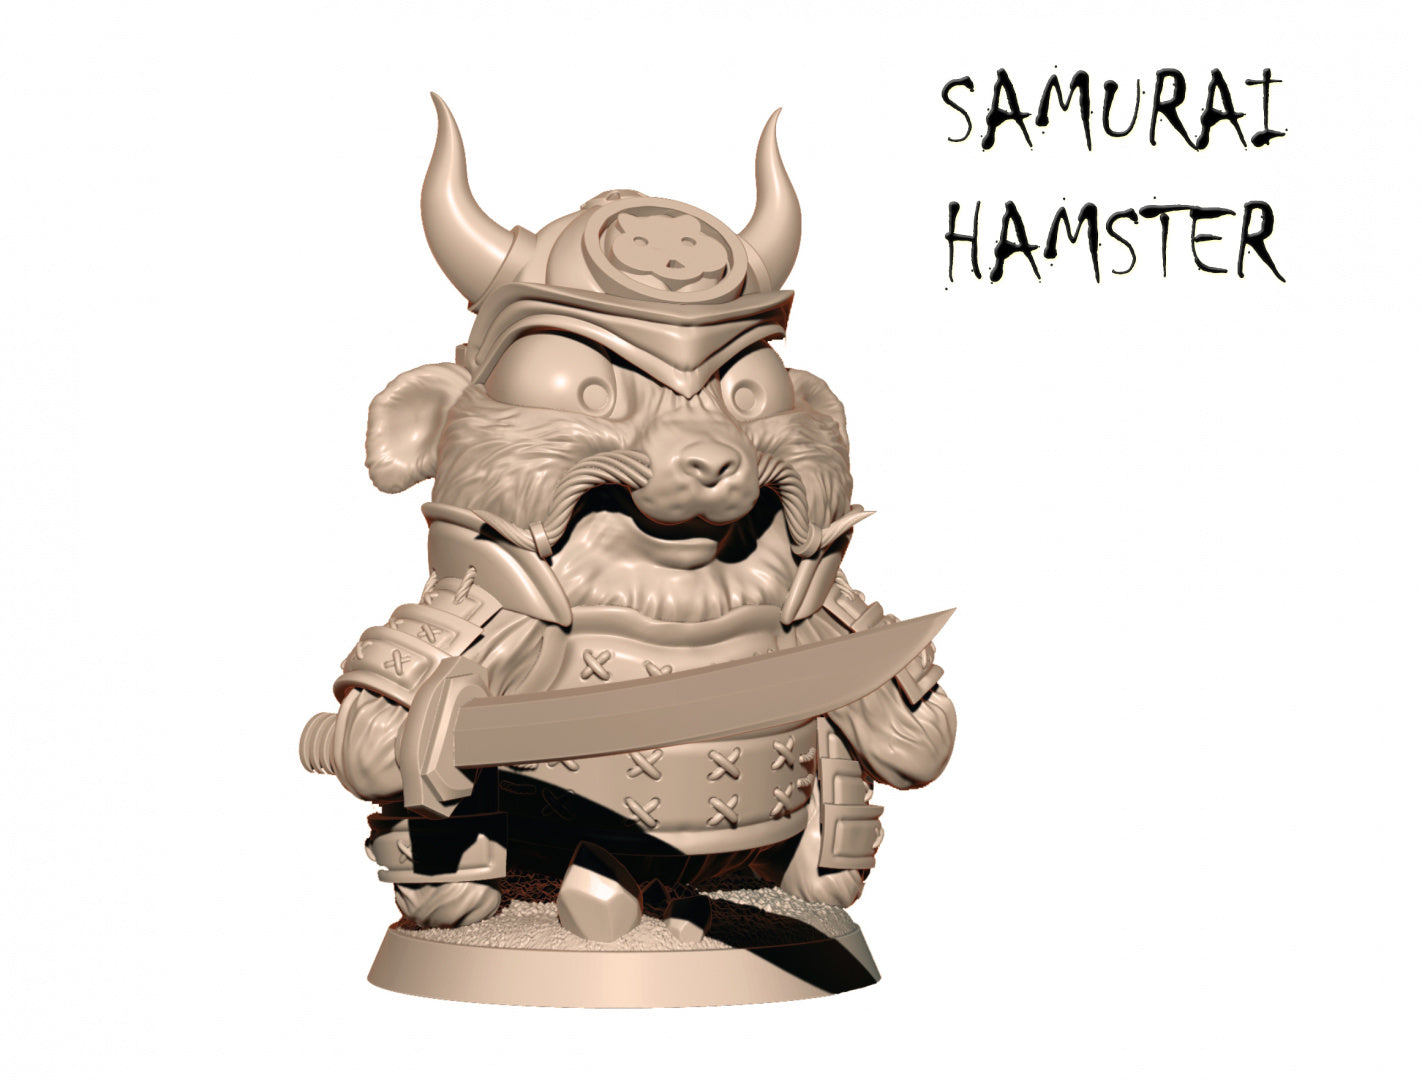 Samurai Hamster